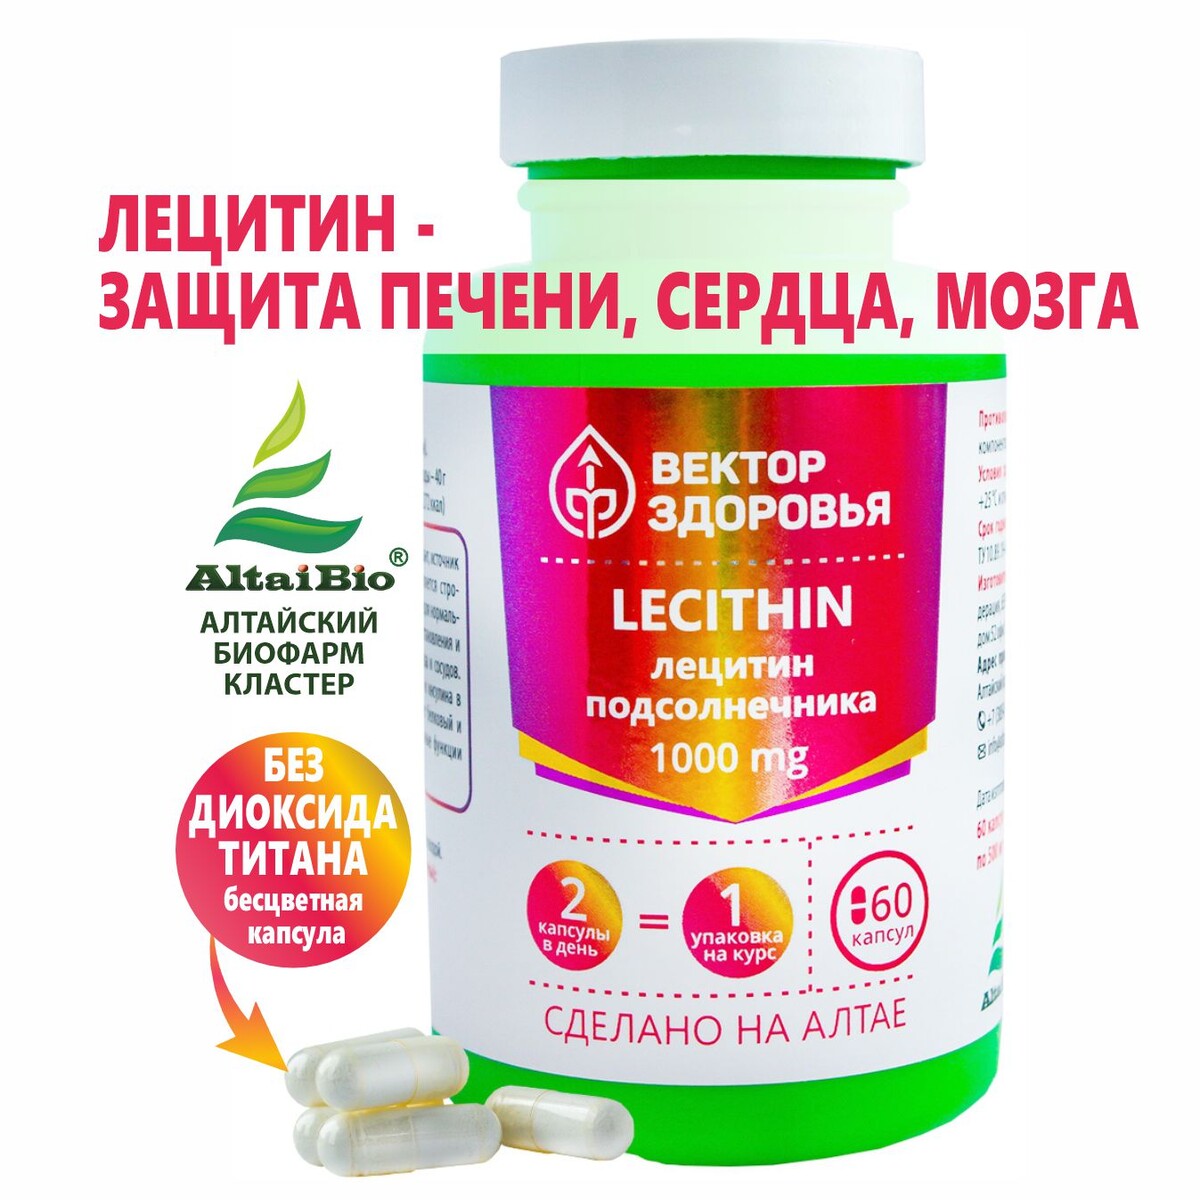 Комплекс lecithin лецитин подсолнечника бесхлорный калий из золы подсолнечника ому гранулы 1 кг